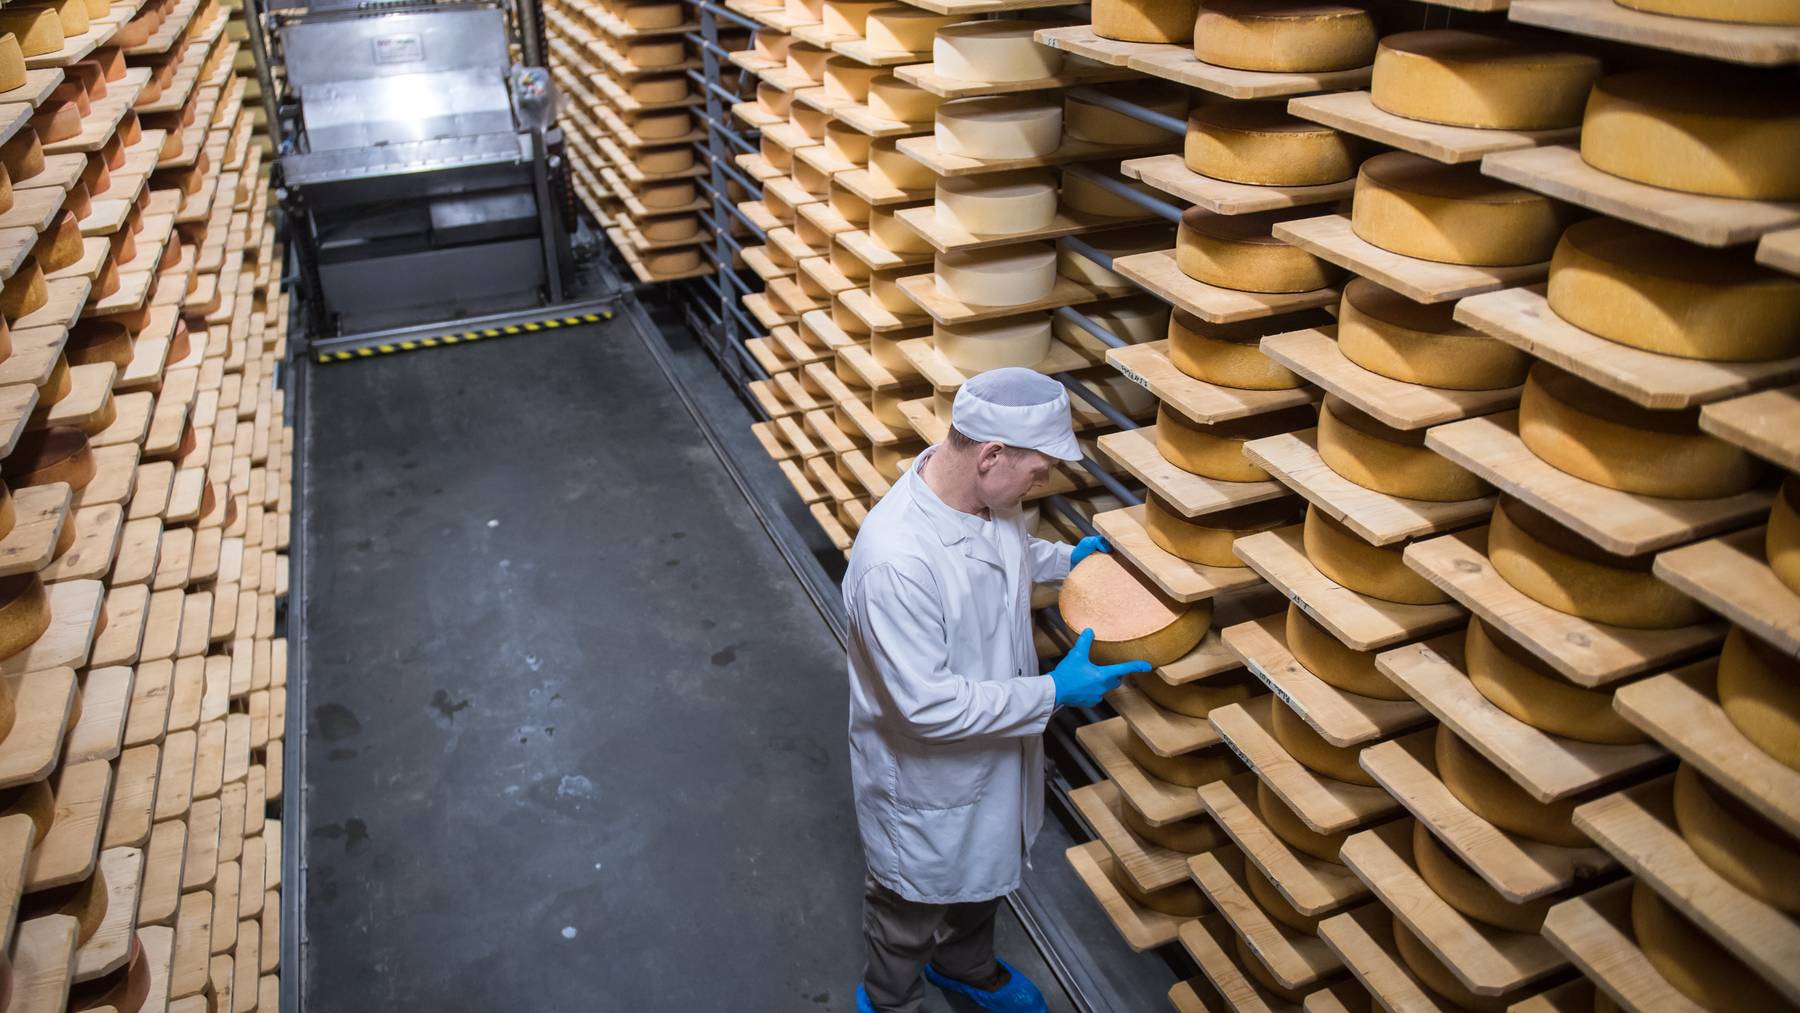 Während die geförderte Milchmenge sinkt, nimmt die Produktion von Käse zu.